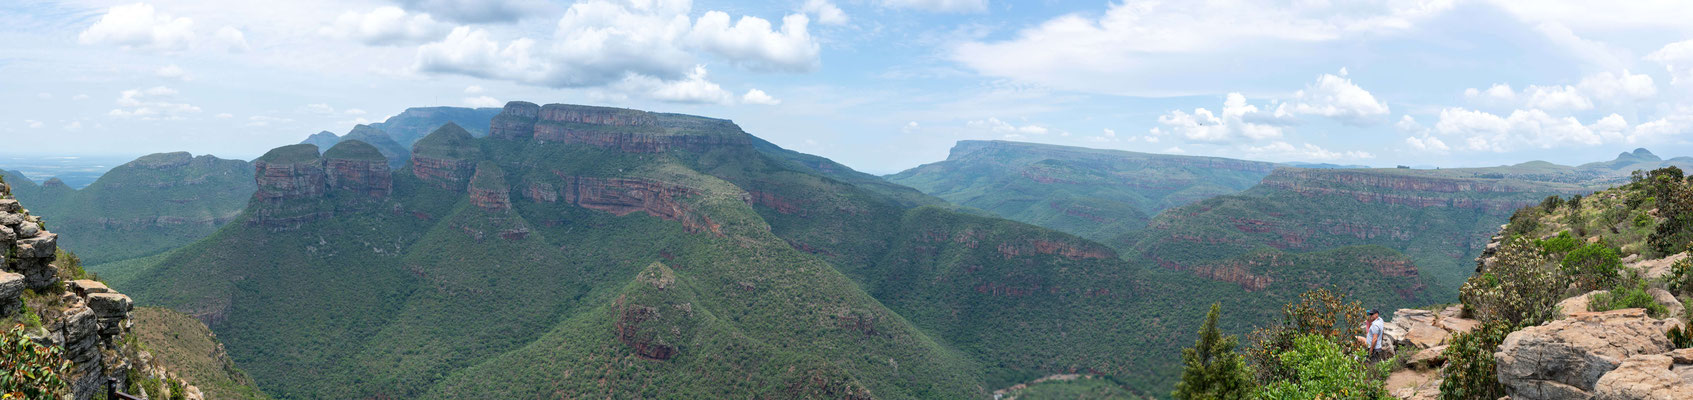 Panorama von der rechten Seite des Aussichtspunktes von einem Felsvorsprung aus